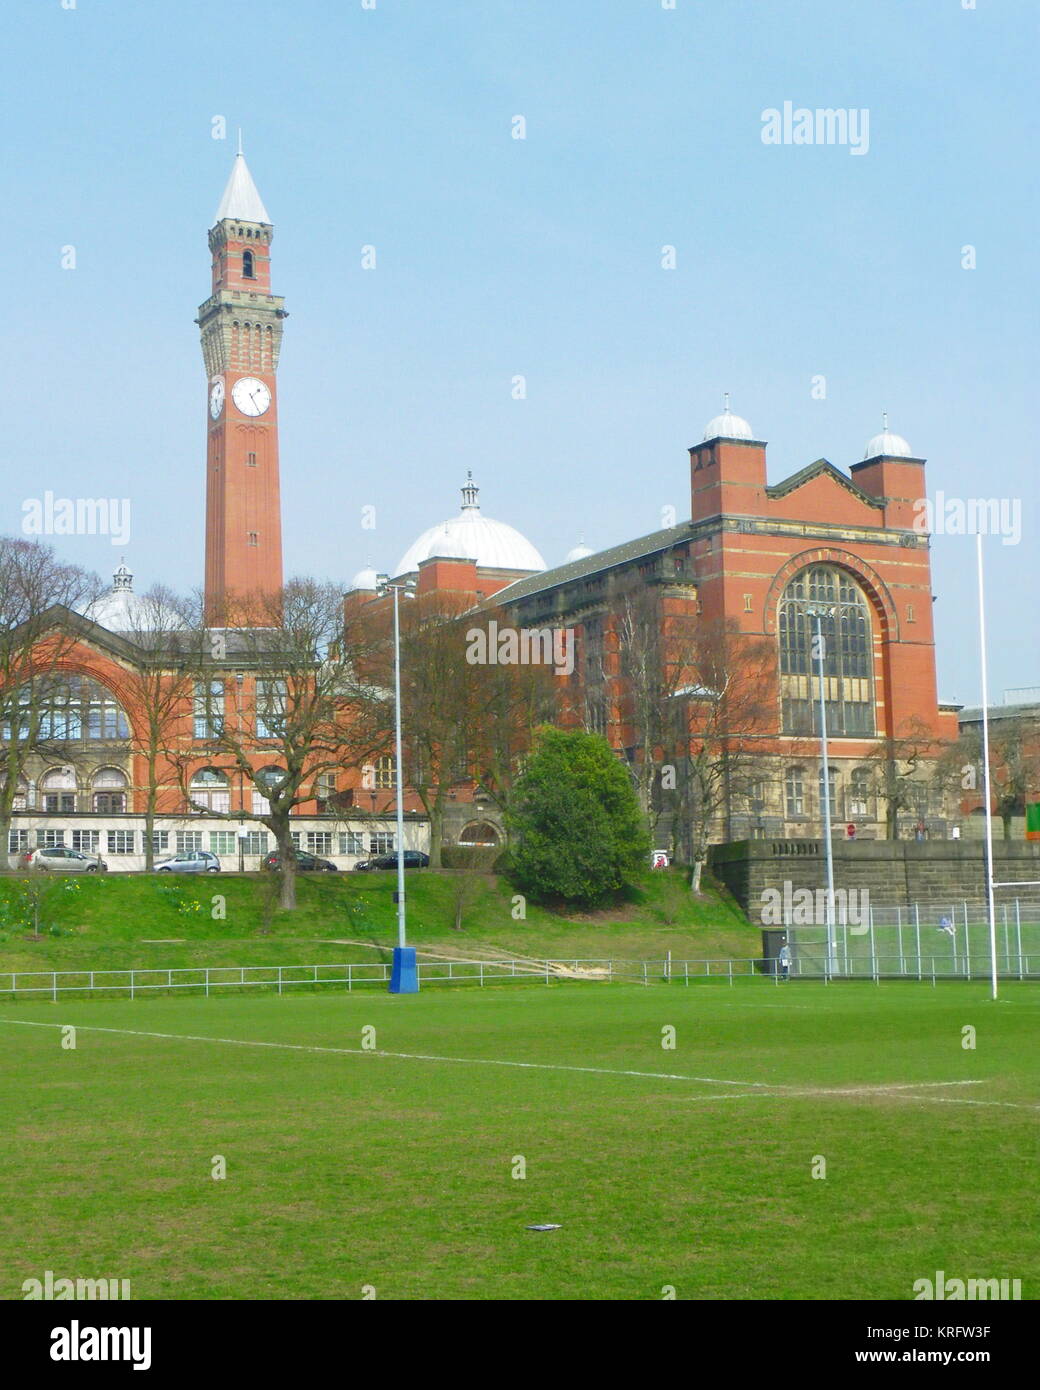 View of Birmingham University, Edgbaston, Birmingham. Stock Photo